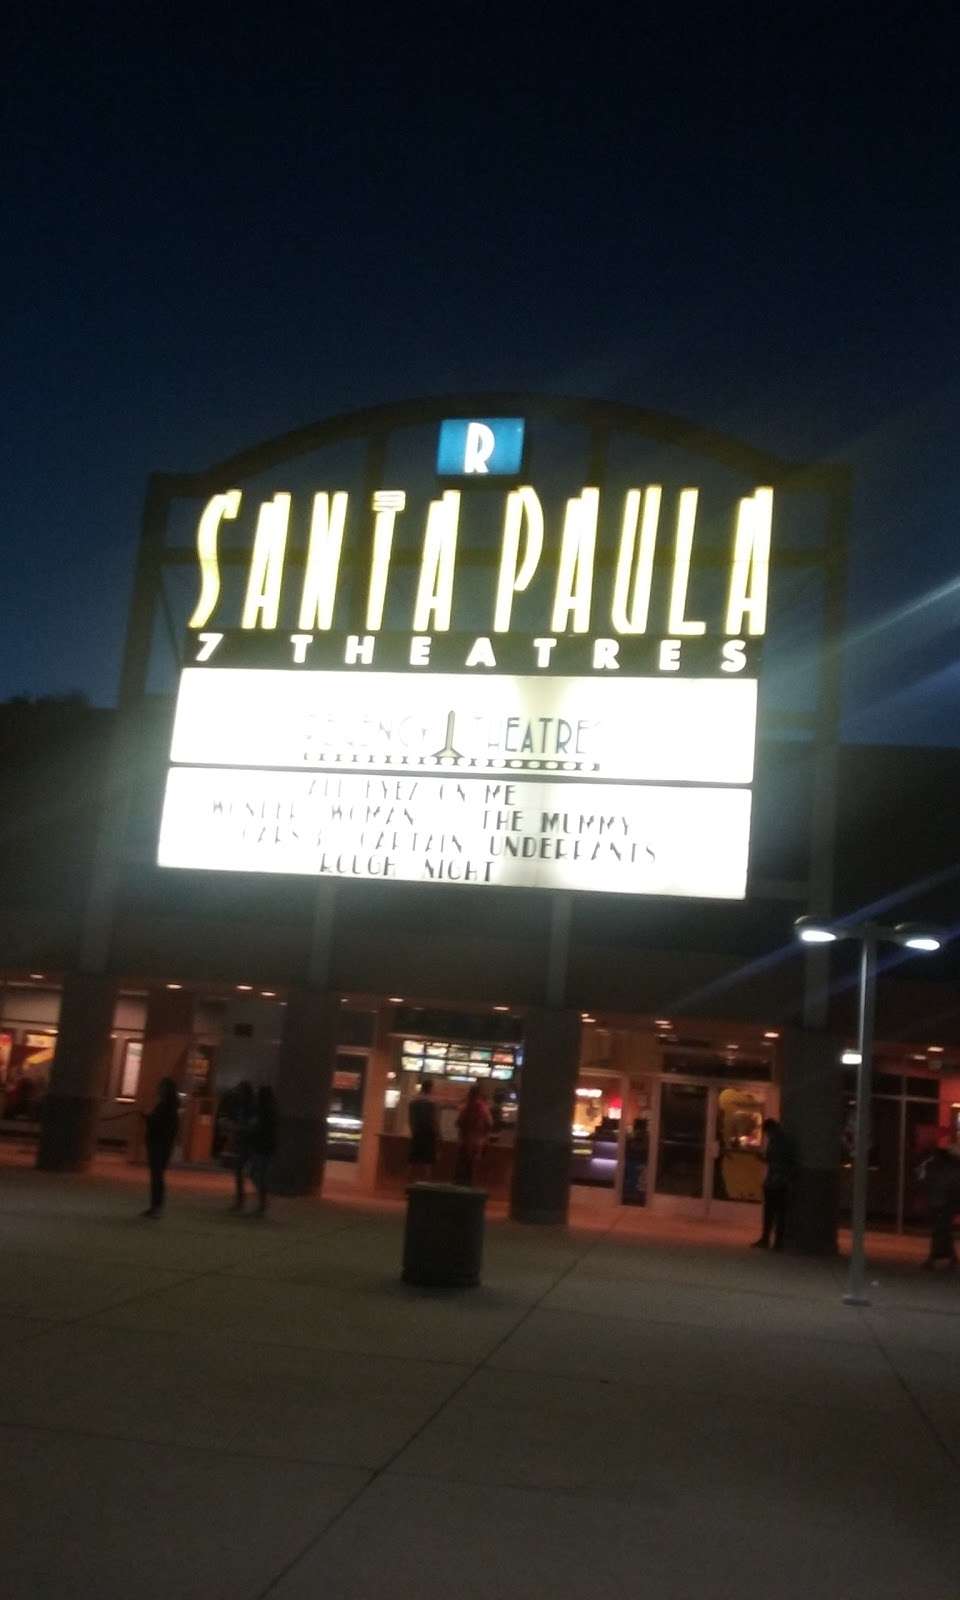 Santa Paula 7 Theatres | 550 W Main St, Santa Paula, CA 93060 | Phone: (805) 933-6707